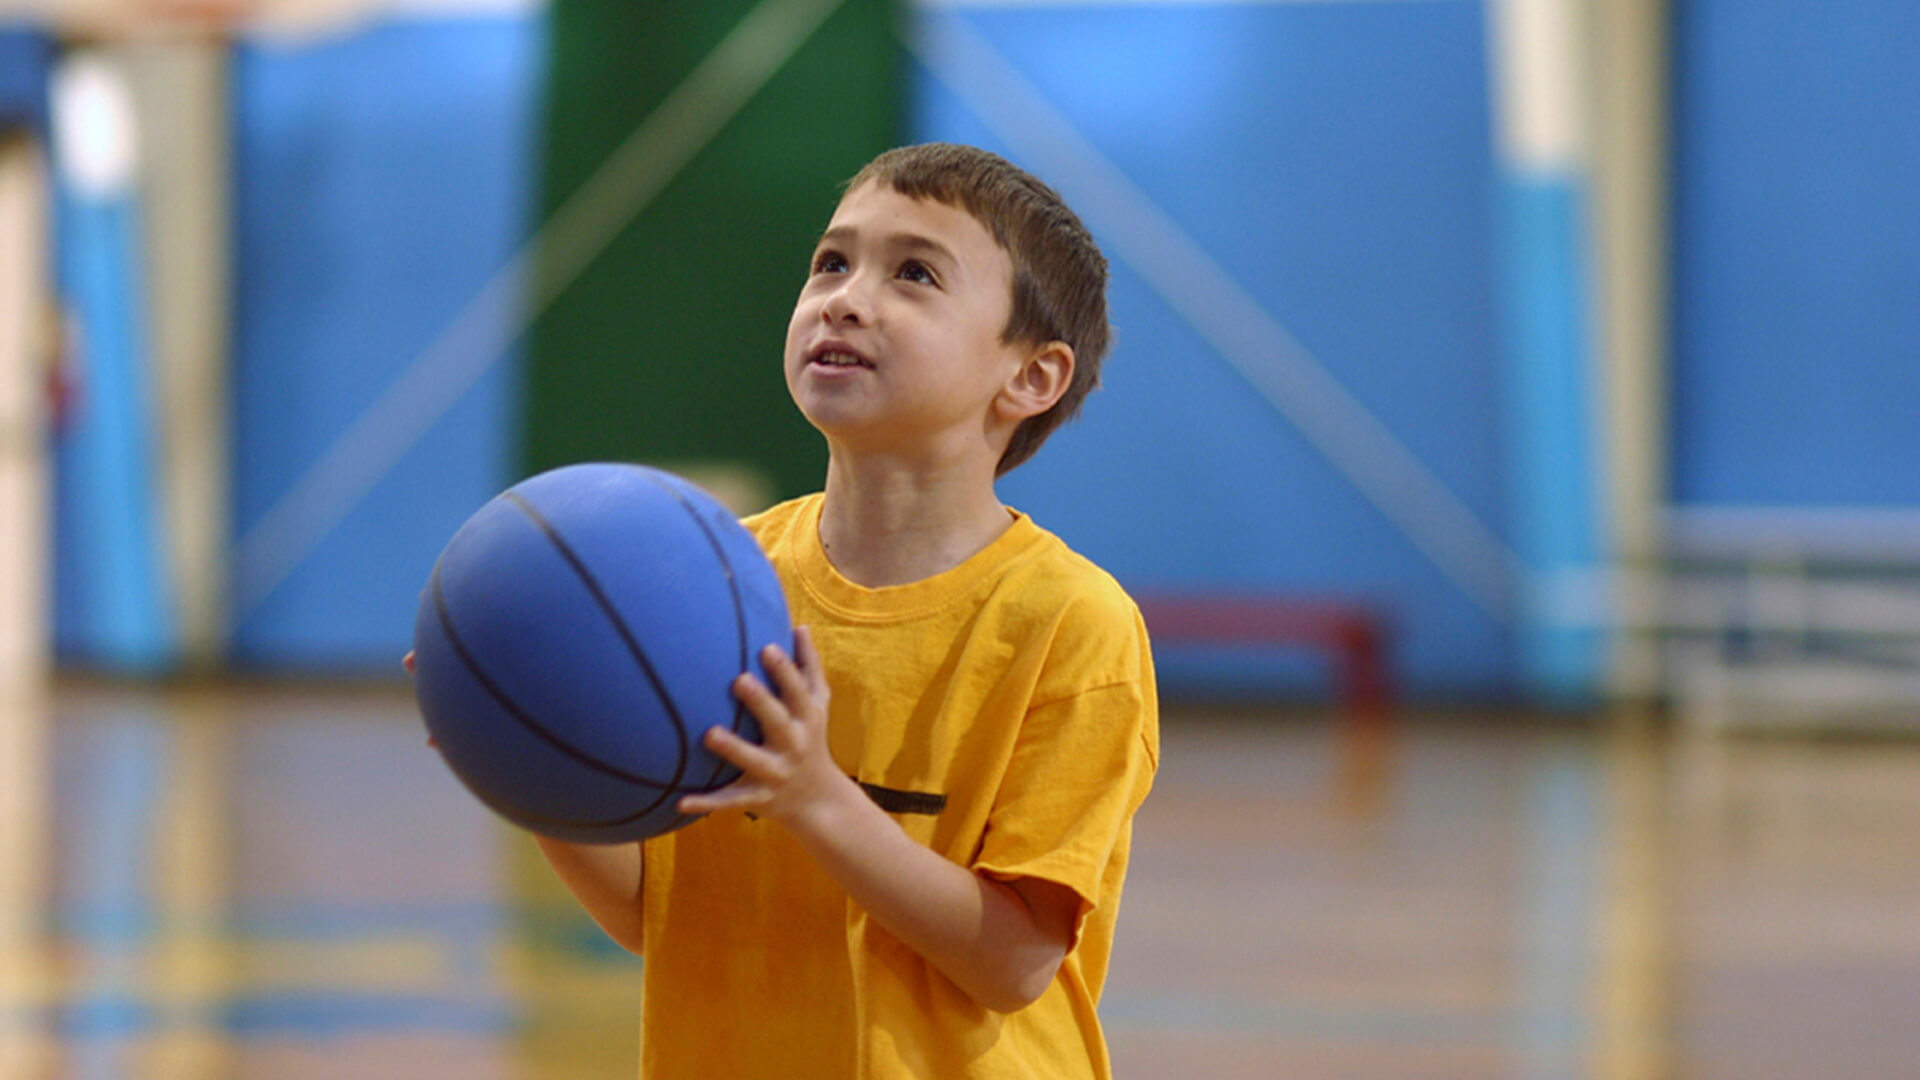 Спортивные мальчики 7 лет. Баскетбол дети. Физкультура баскетбол. Баскетбол в школе. Дети с мячом в школе.